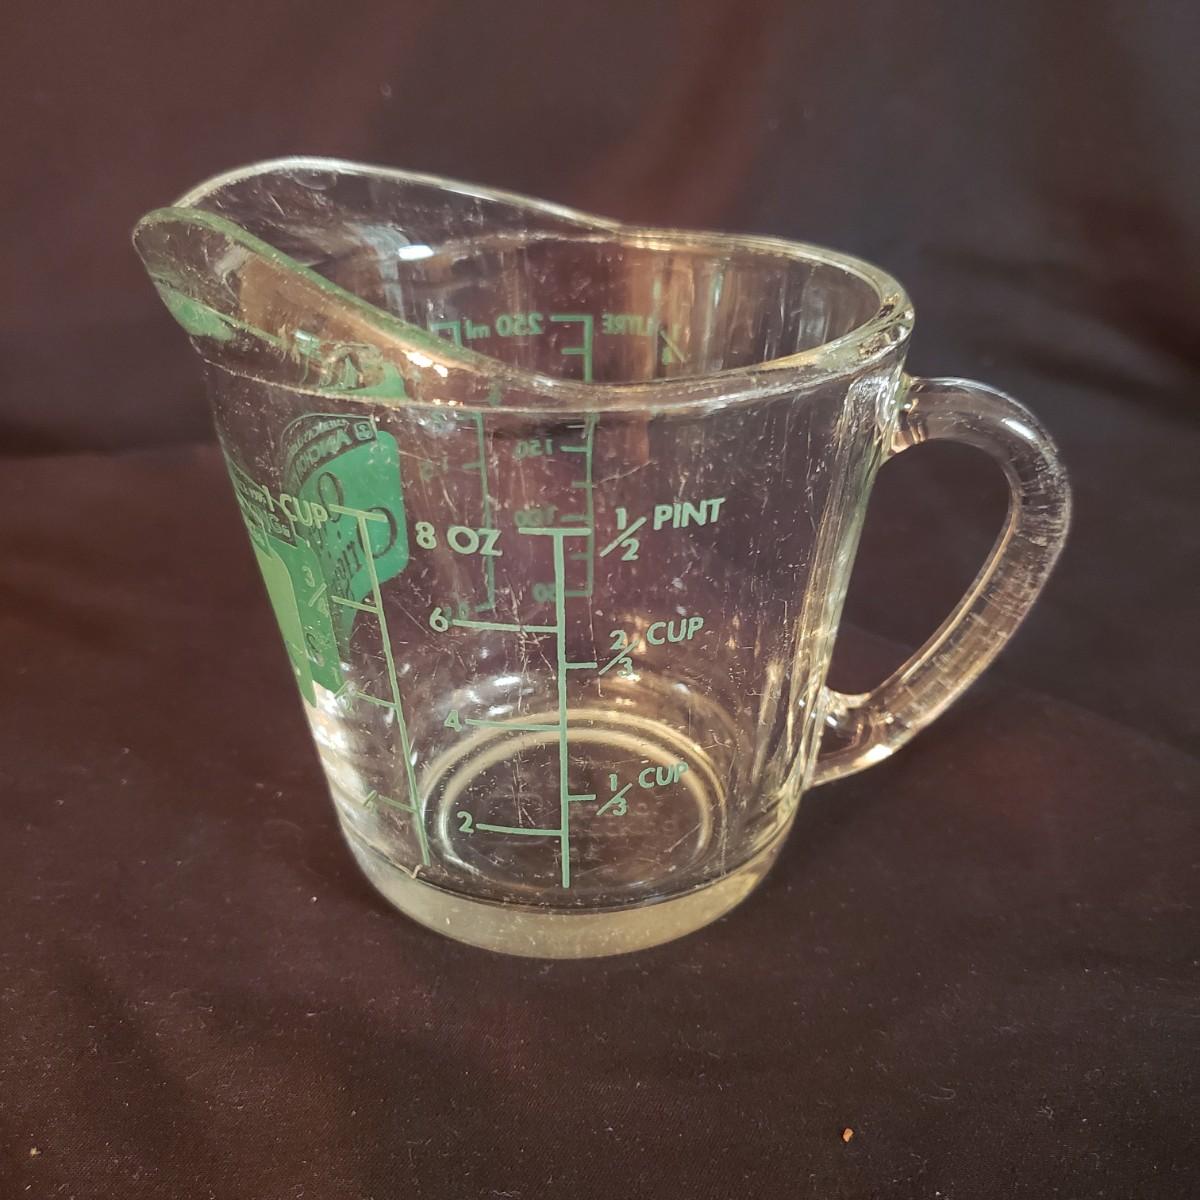 8 oz Glass Measuring Cup - Anchor